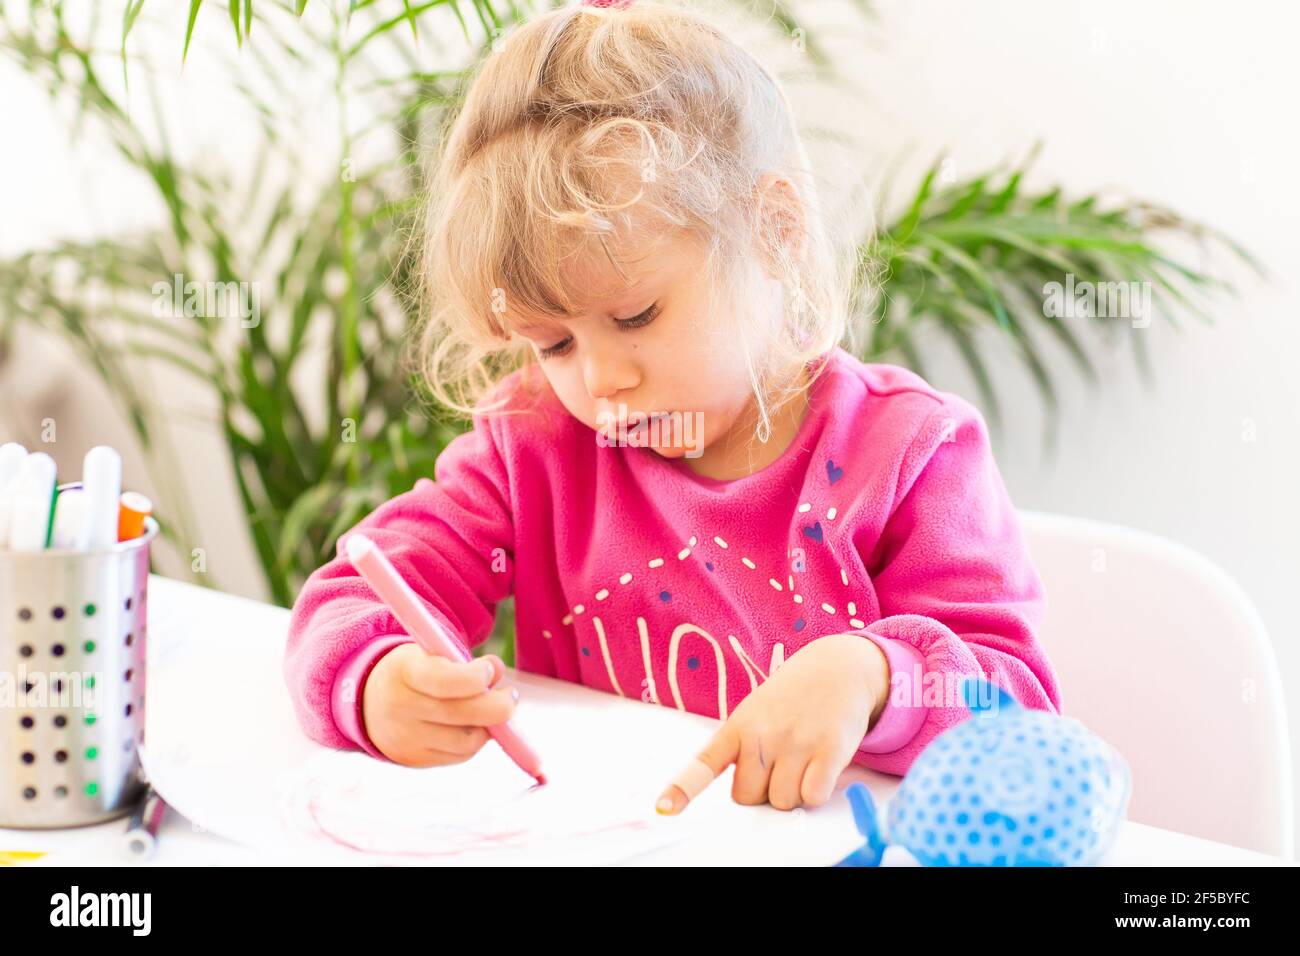 Unter Quarantäne Spaß. Kleines Mädchen, das während des Coronavirus-Ausbruchs malte und Hausaufgaben machte. Lebensstil unter Corona-Virus. Stockfoto